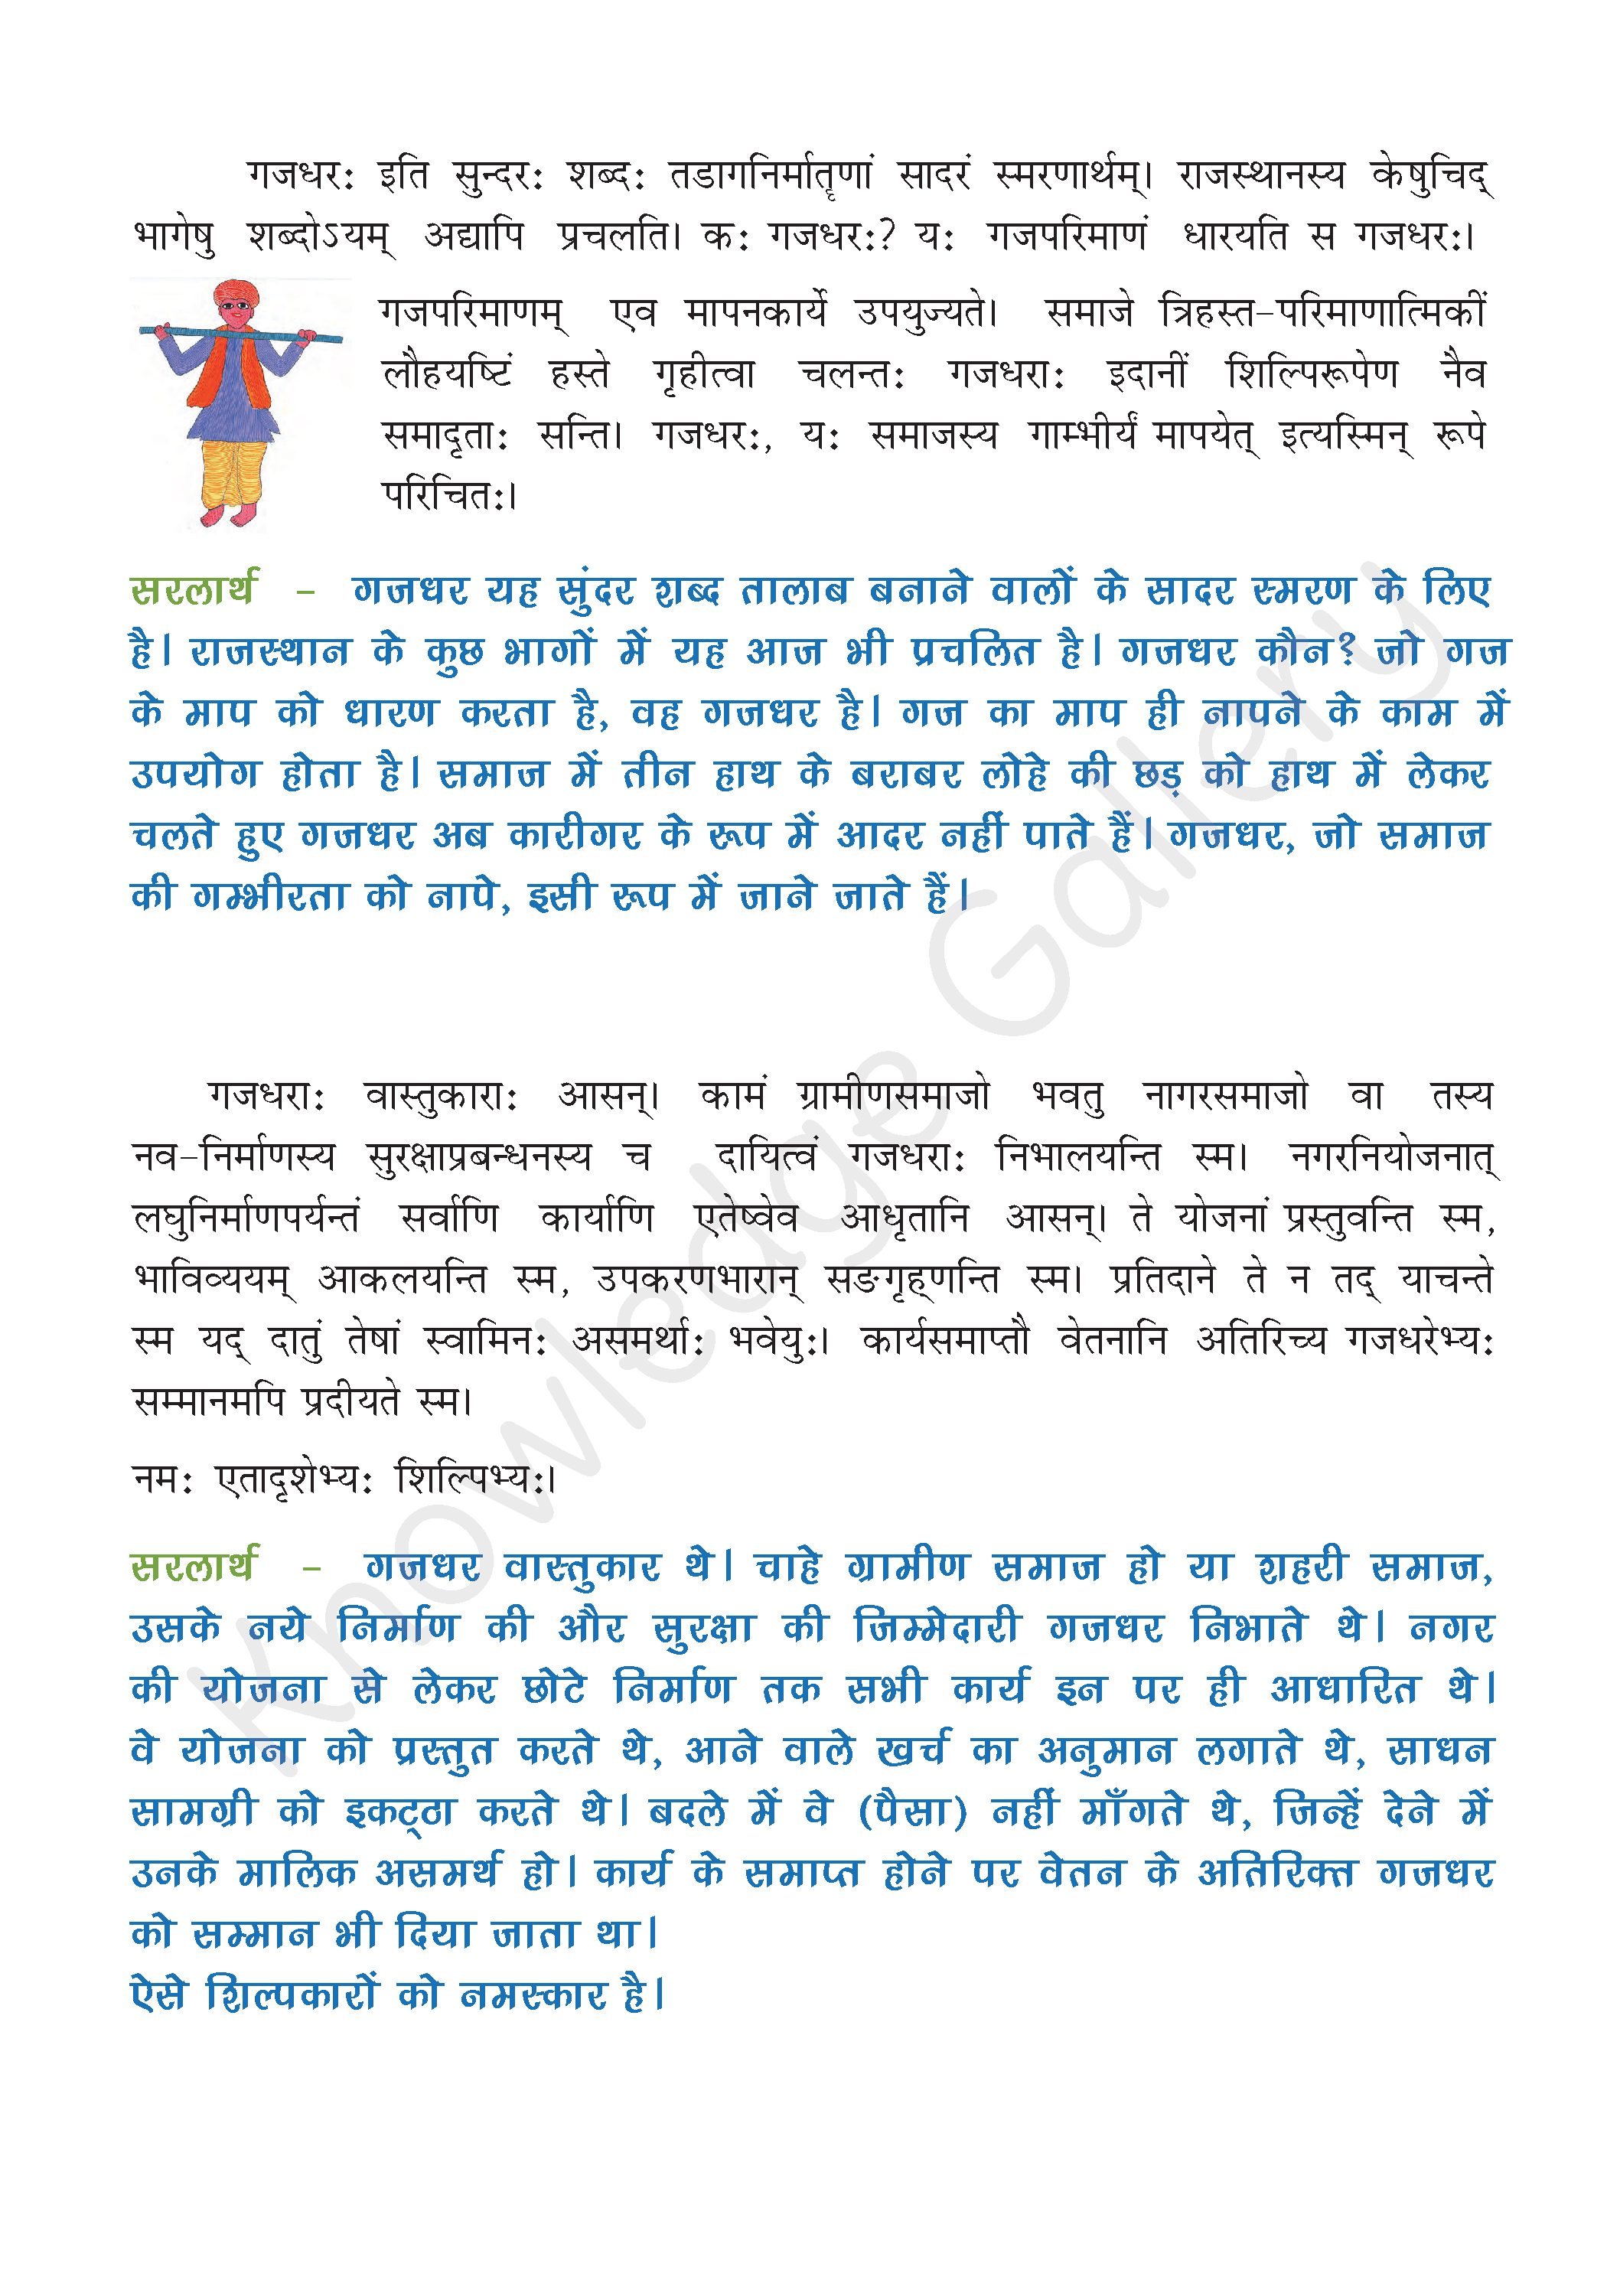 NCERT Solution For Class 8 Sanskrit Chapter 8 part 2